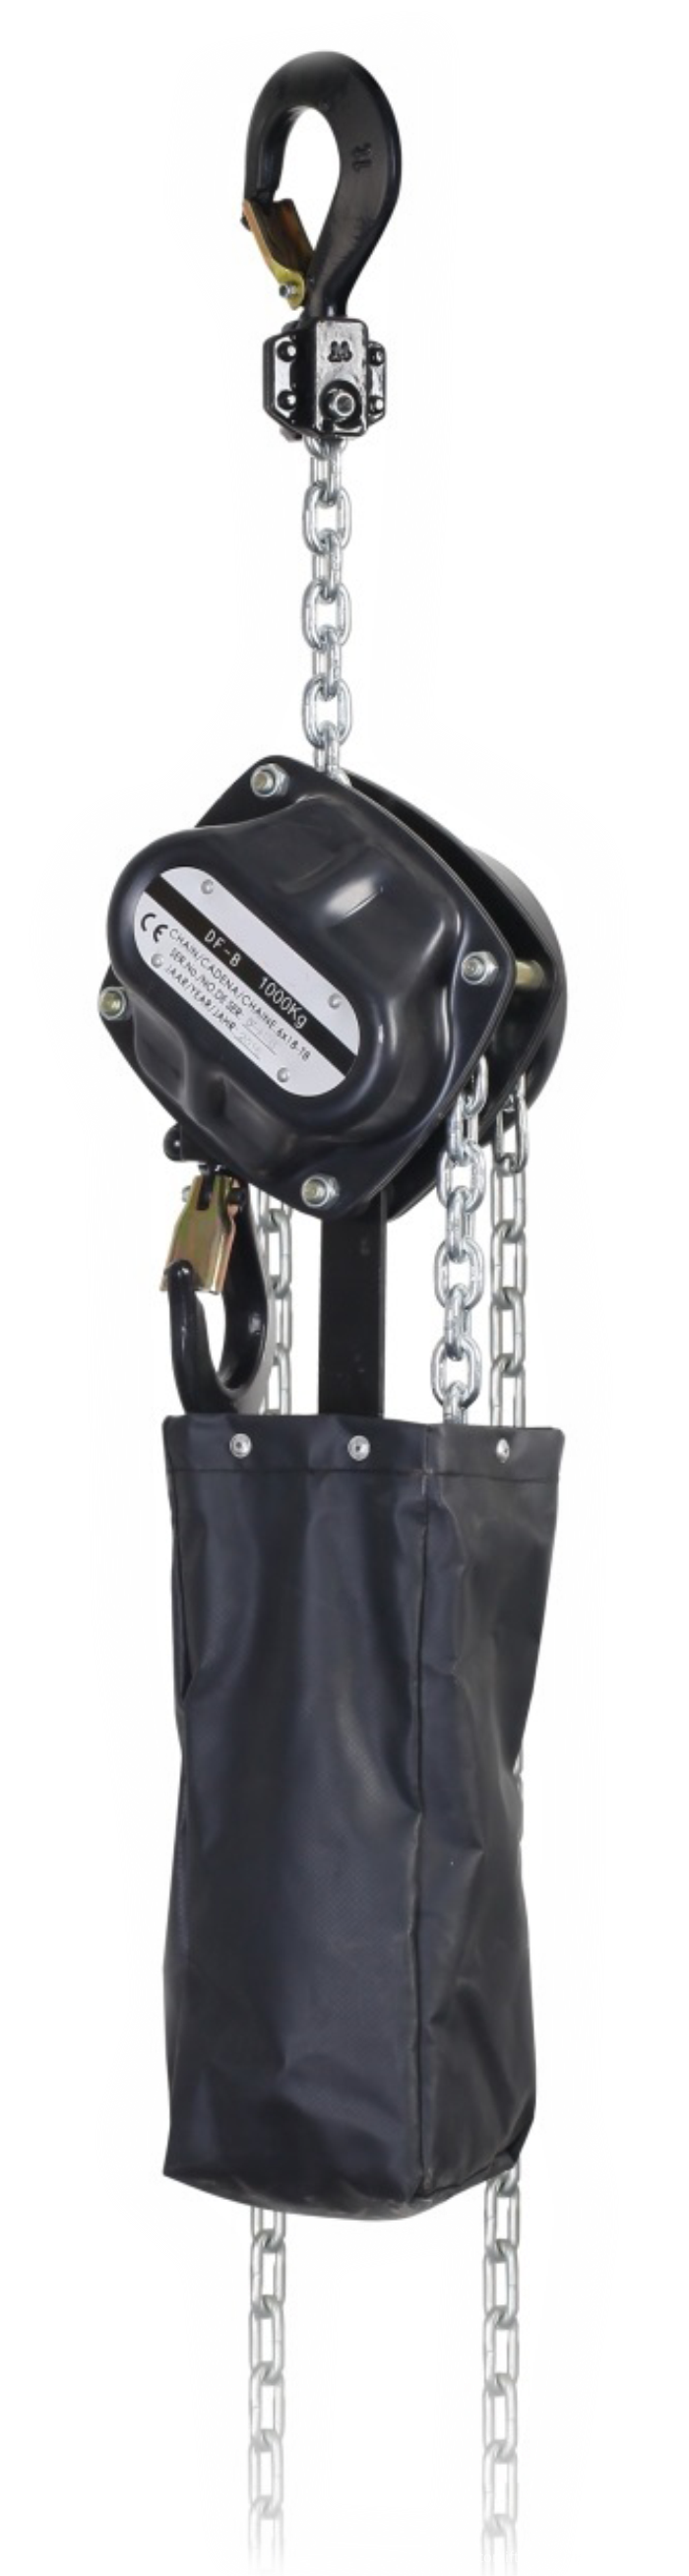 chain hoist for lighting